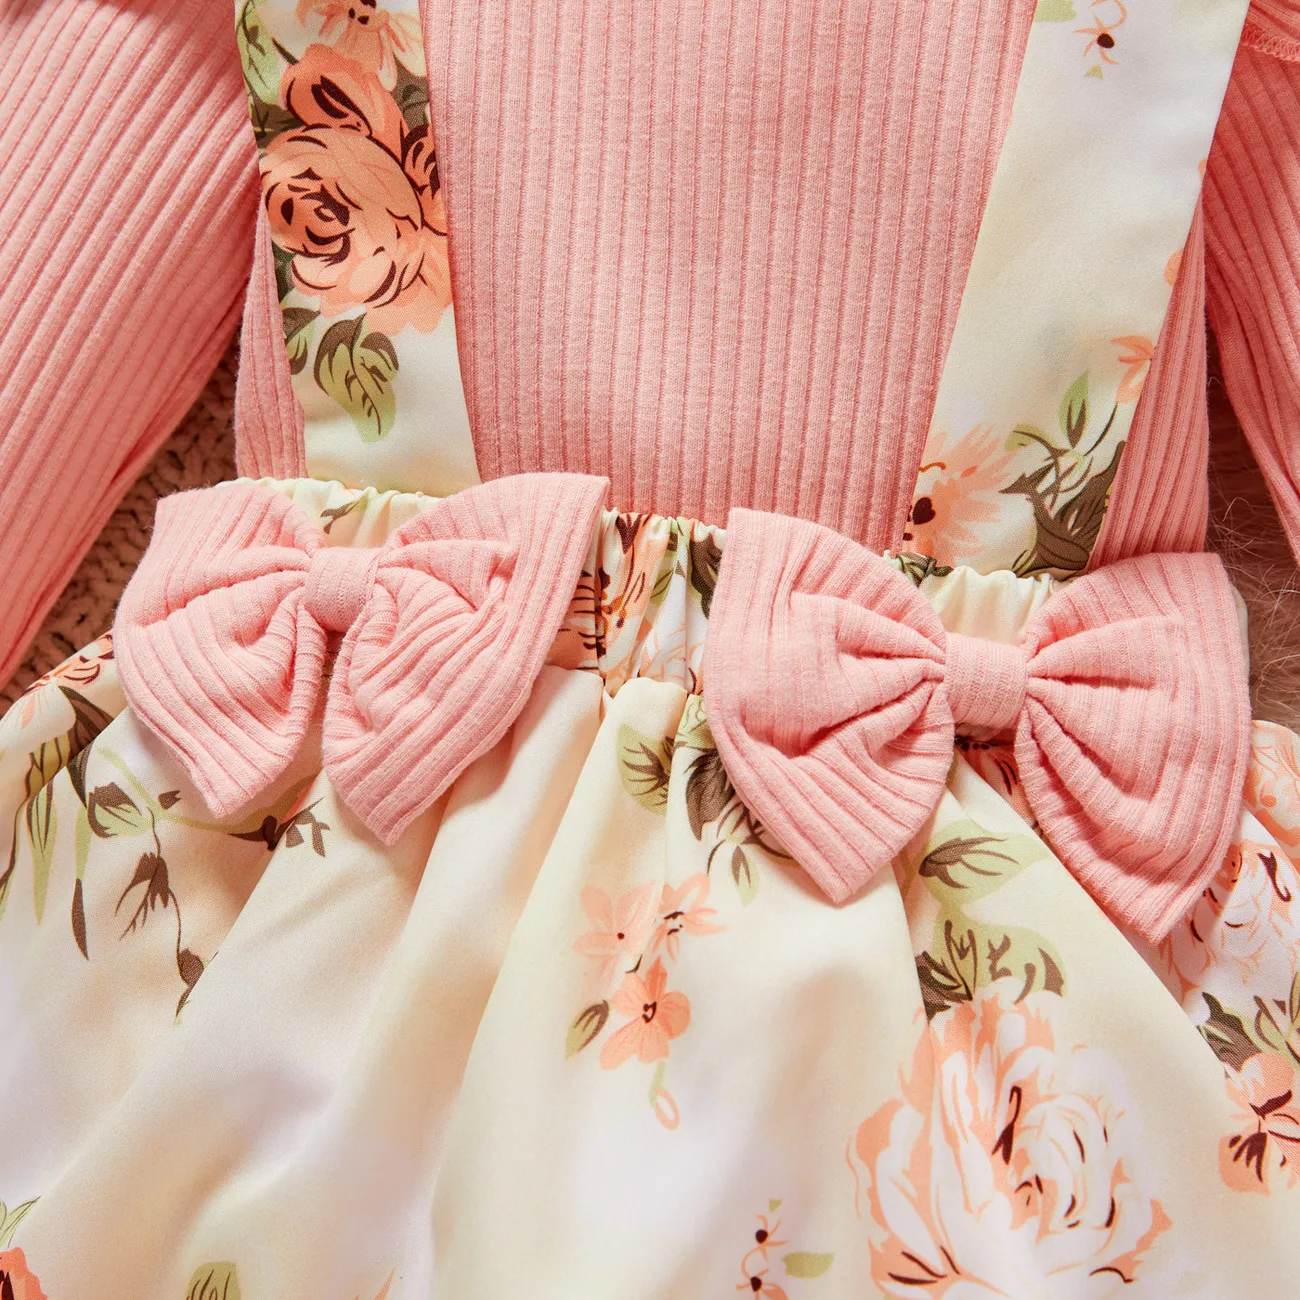 2件 嬰兒 女 立體造型 甜美 長袖 連身衣 粉色 big image 1